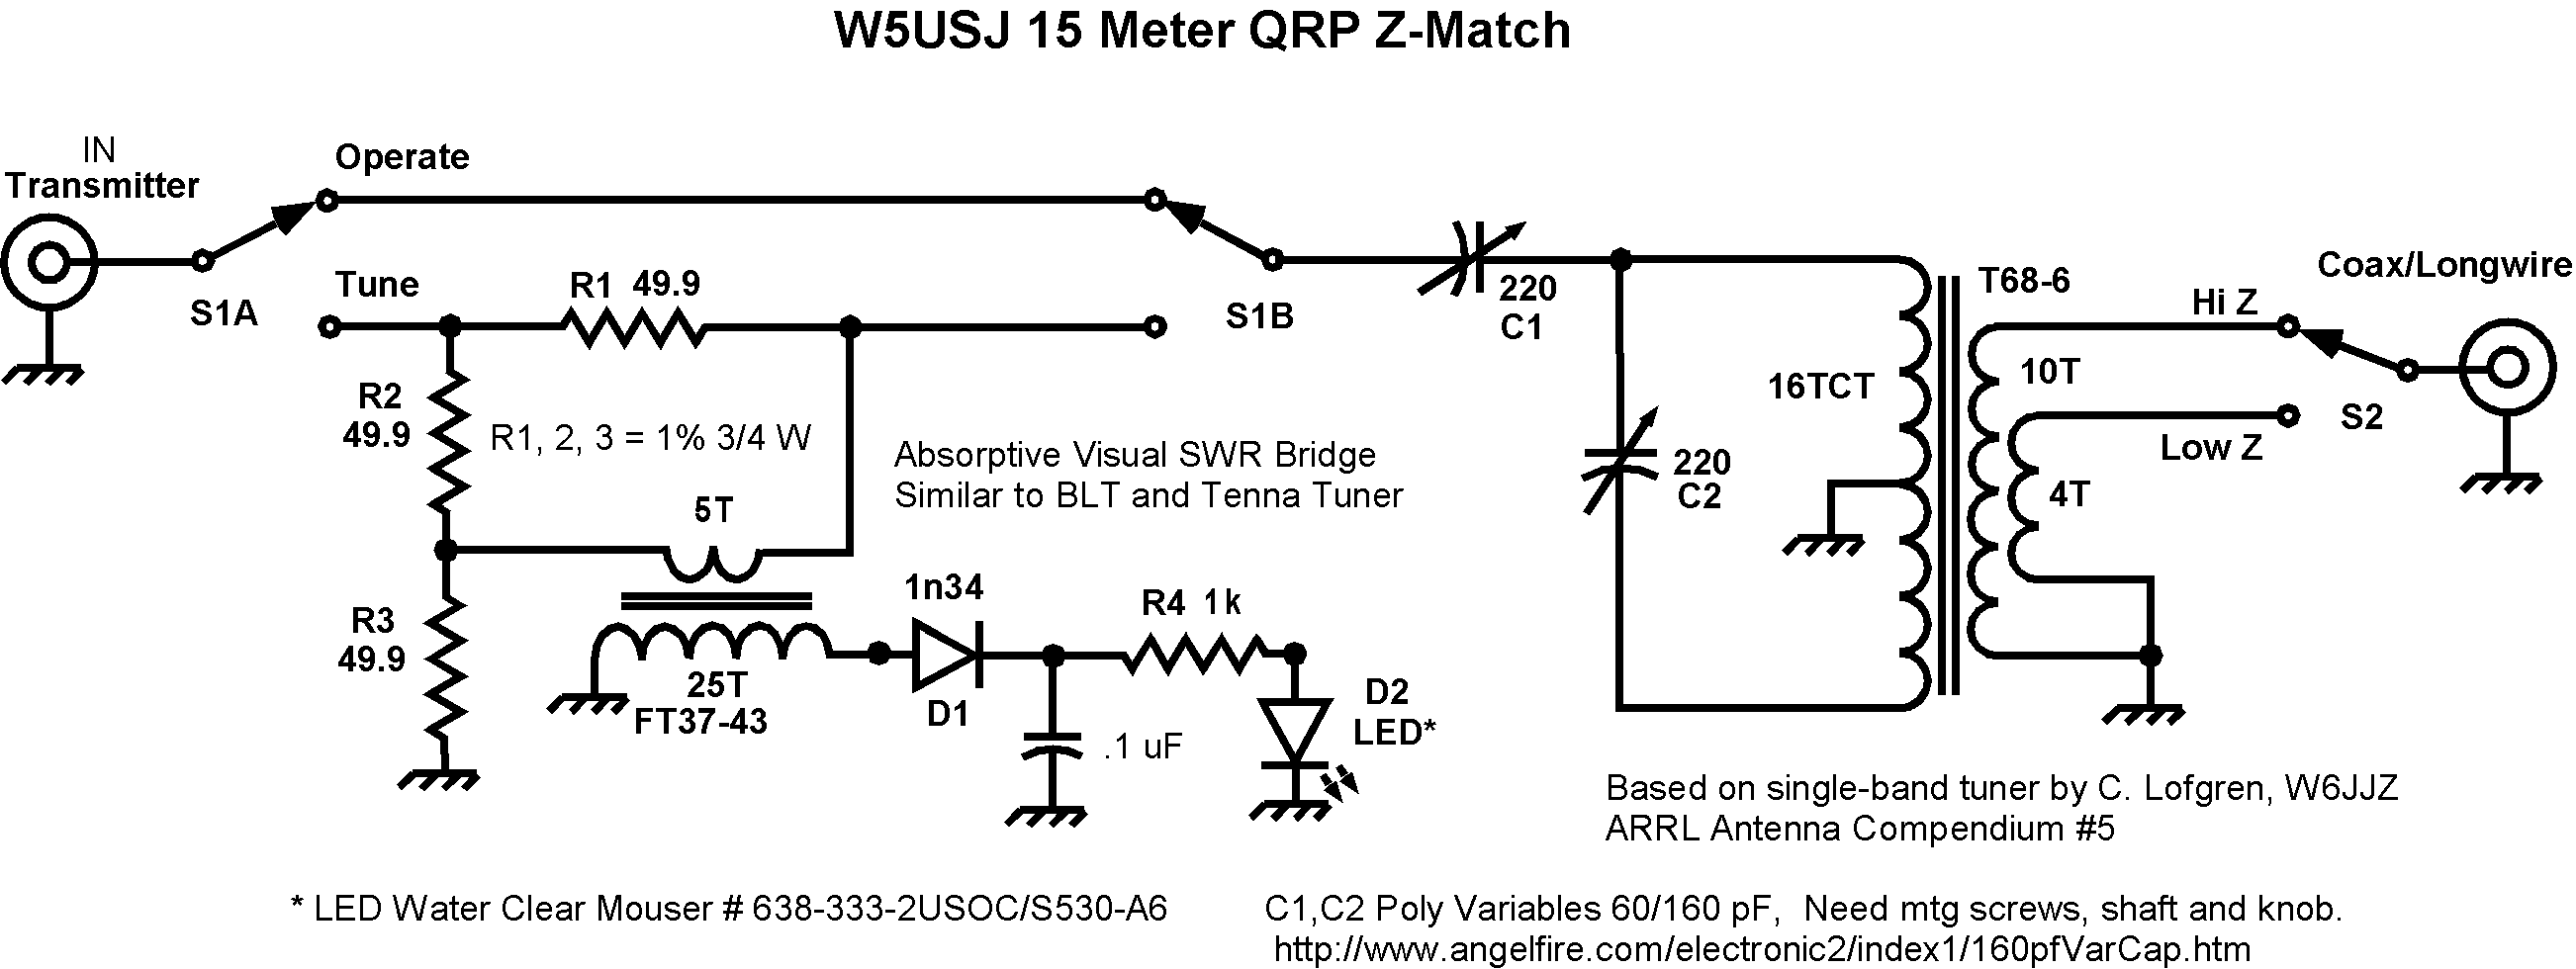 15 Meter Z-Match Schematic